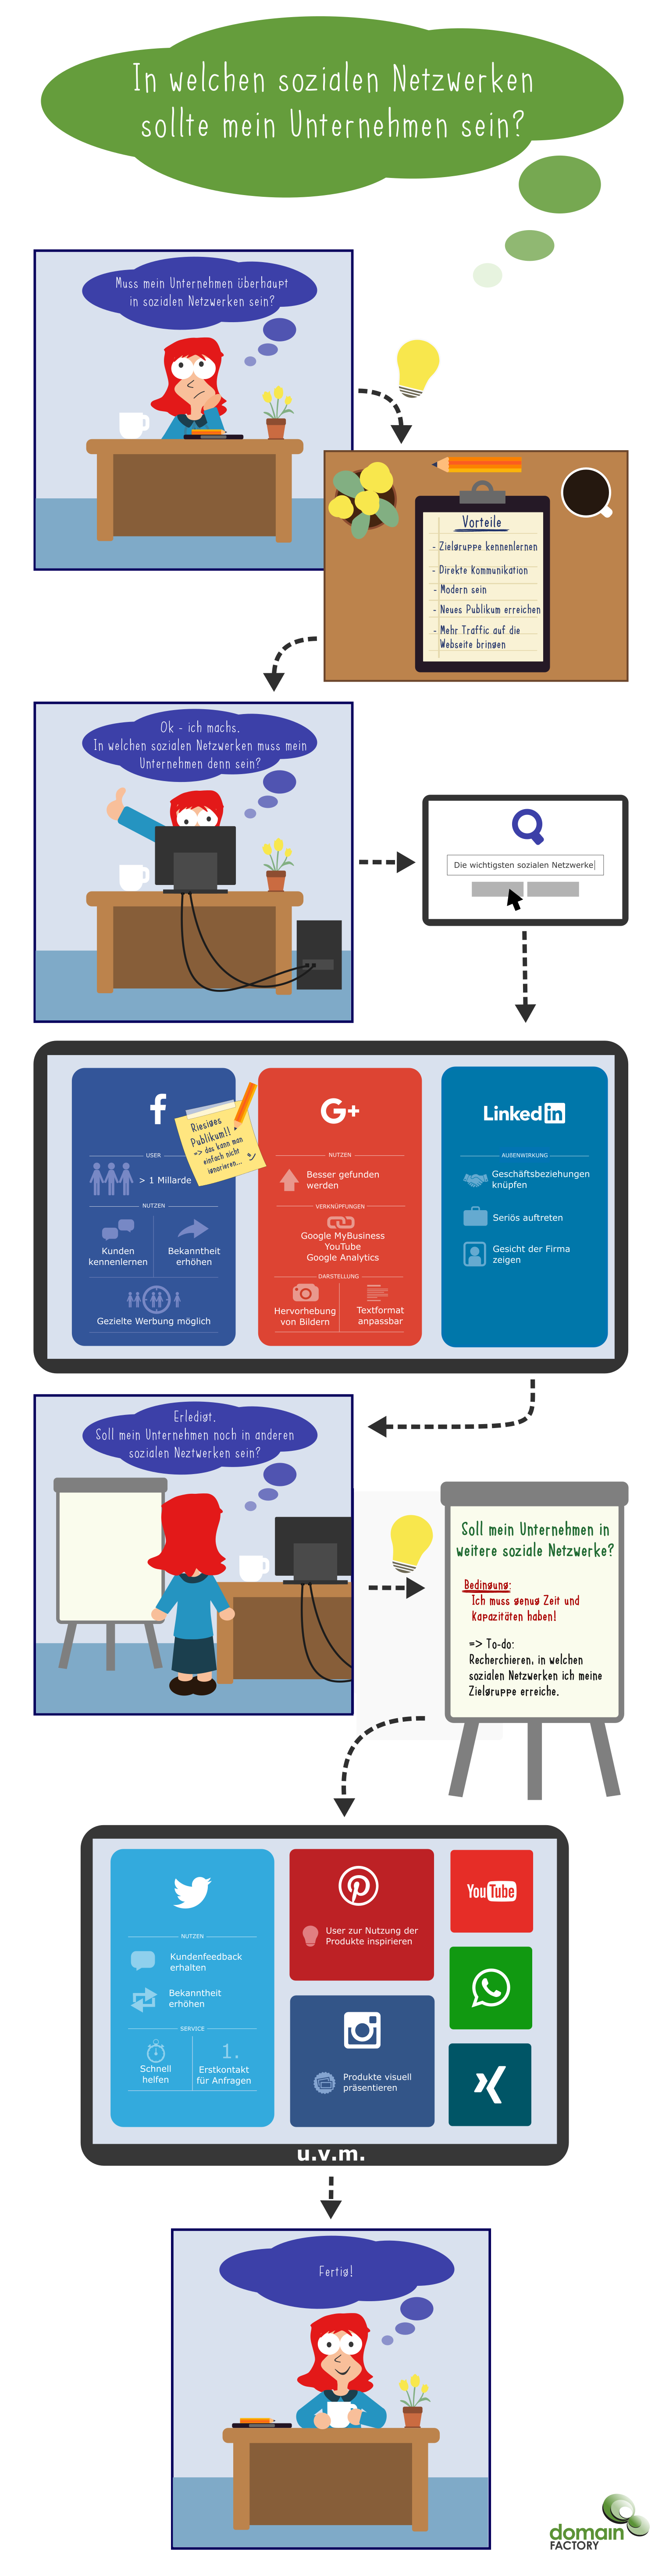 Infografik "In welchen sozialen Netzwerken sollte mein Unternehmen sein?"